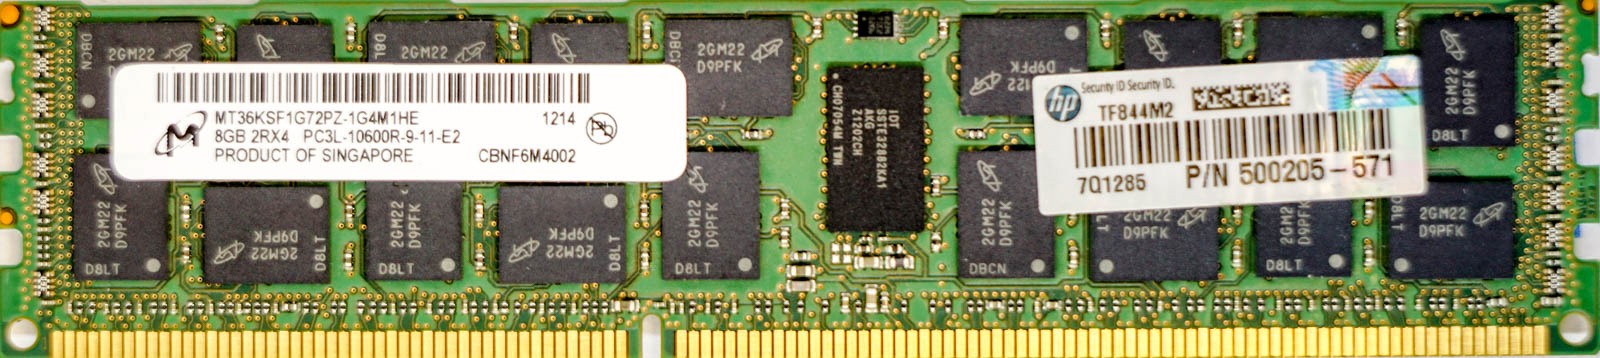 HP (500205-571) - 8GB PC3L-10600R (DDR3-1333Mhz, 2RX4)